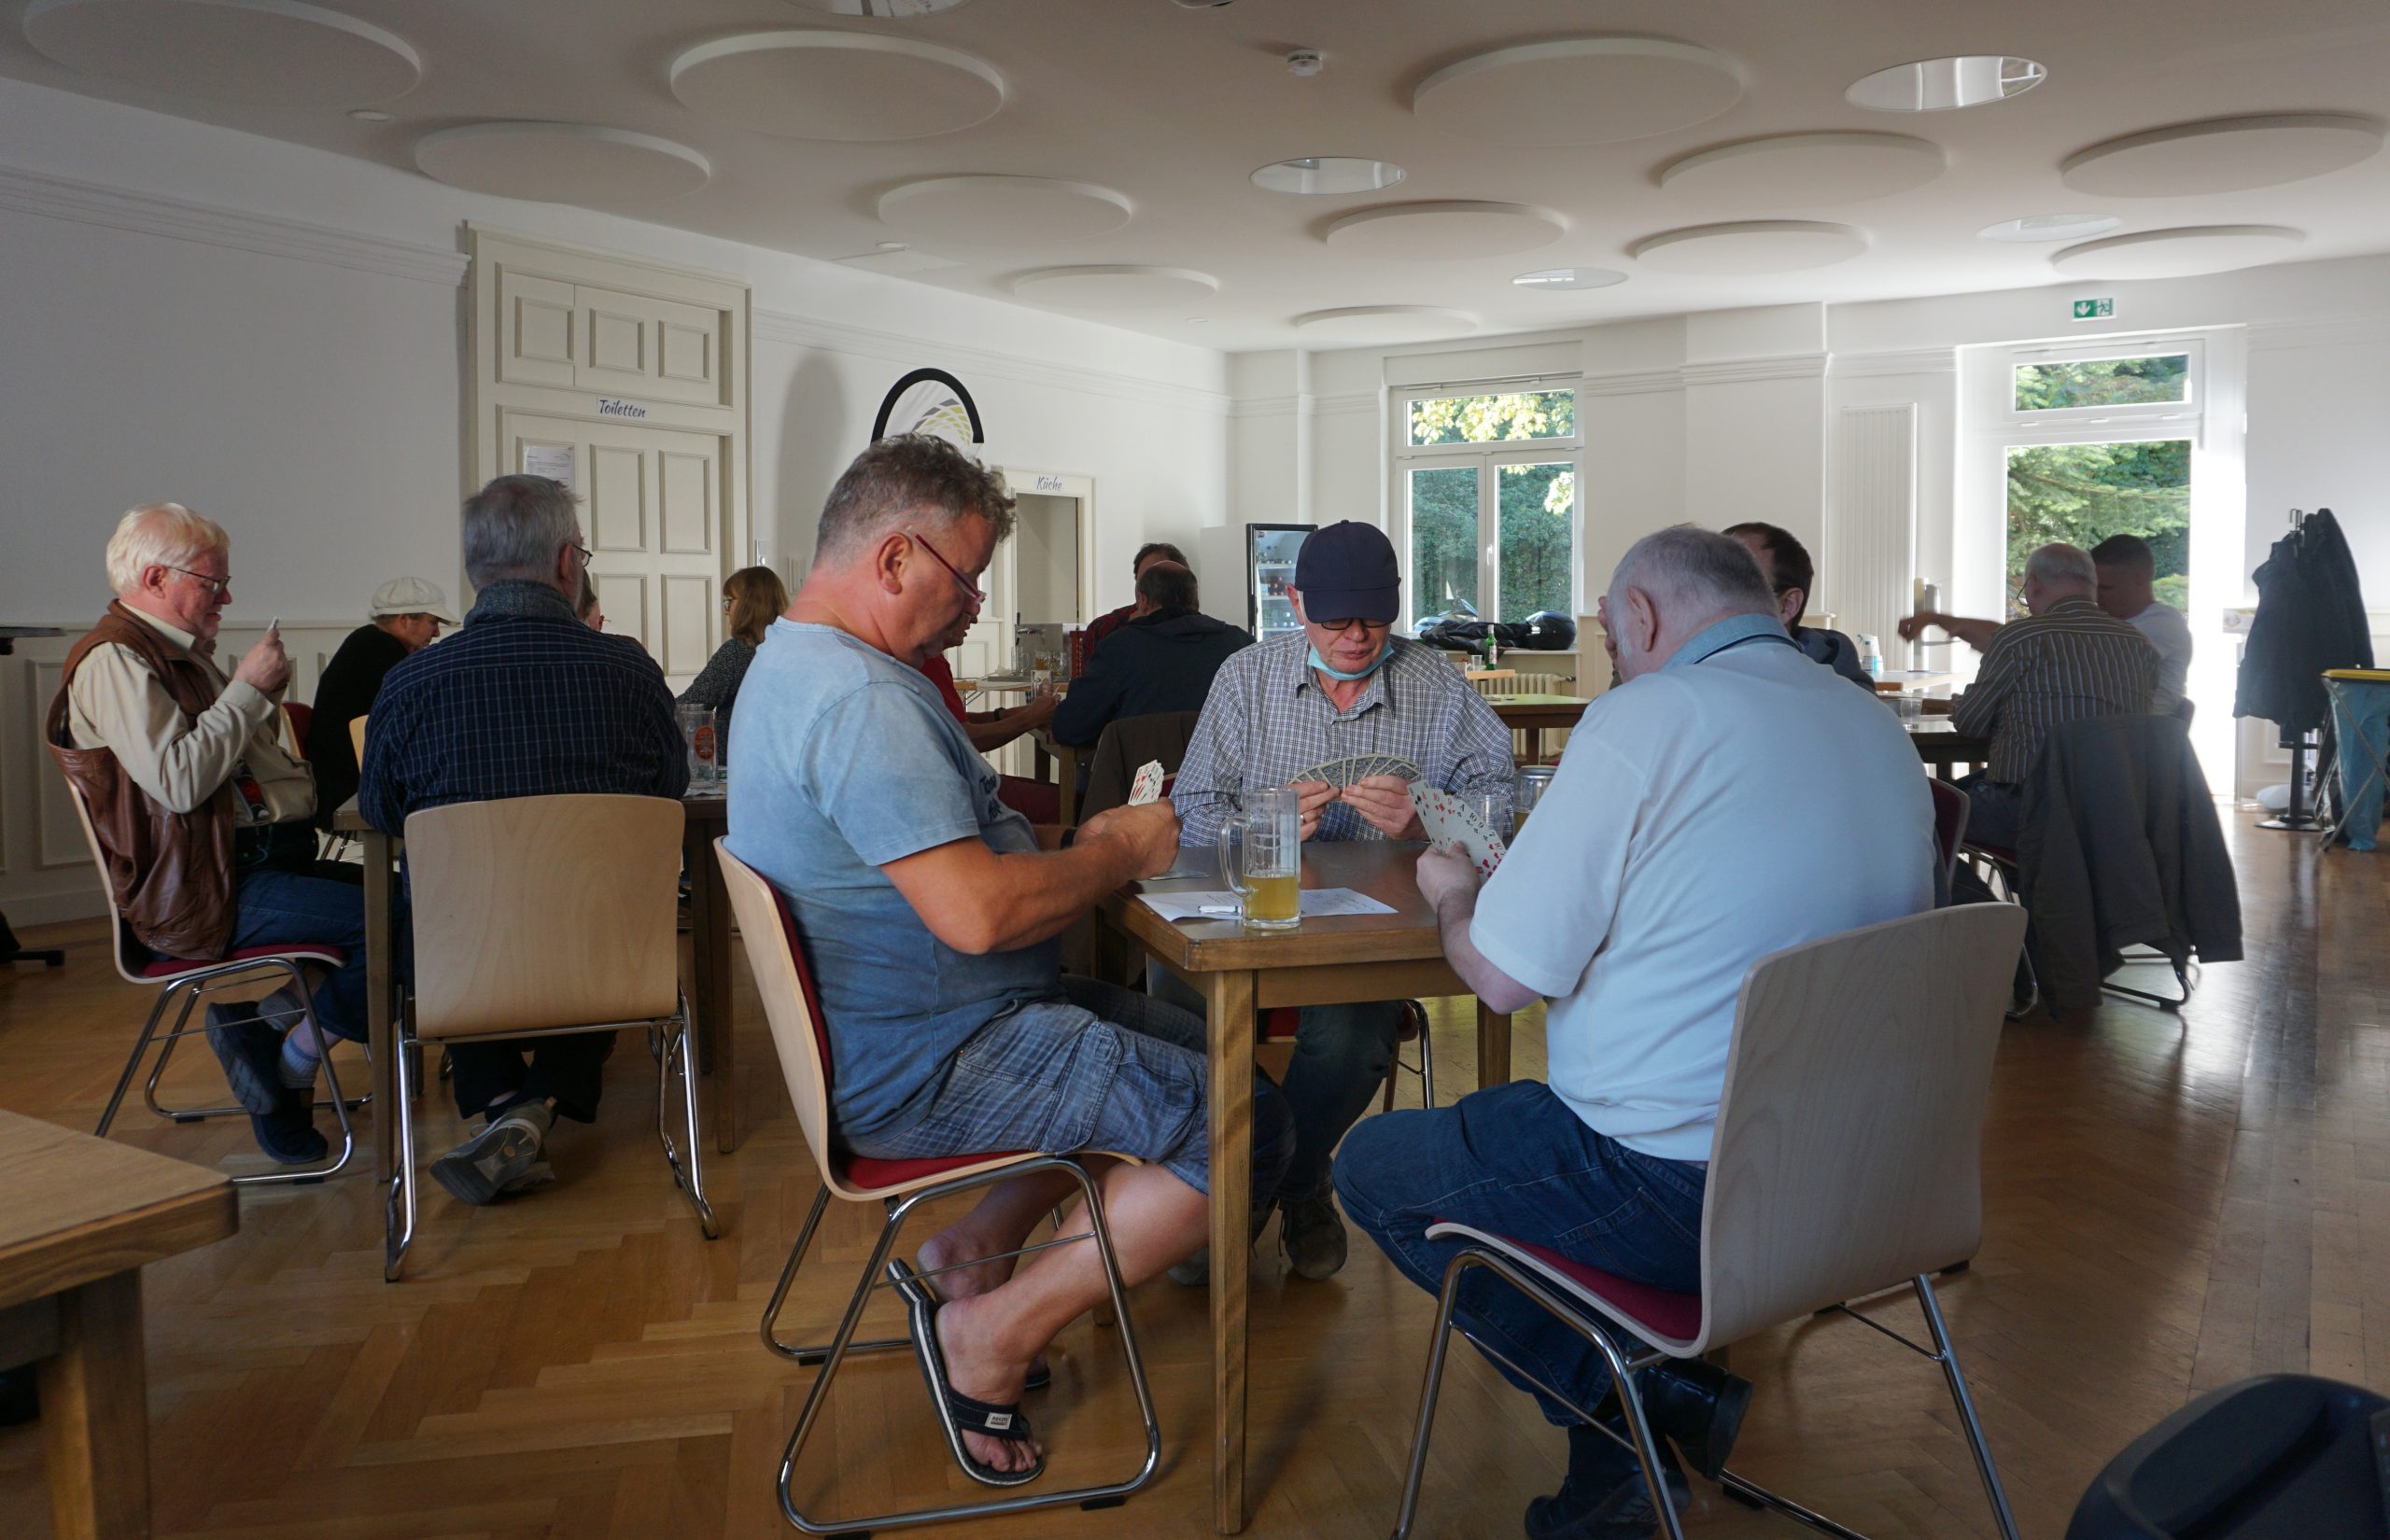 An mehreren Tischen spielen mehrere Personen in Dreiergruppen Karten.